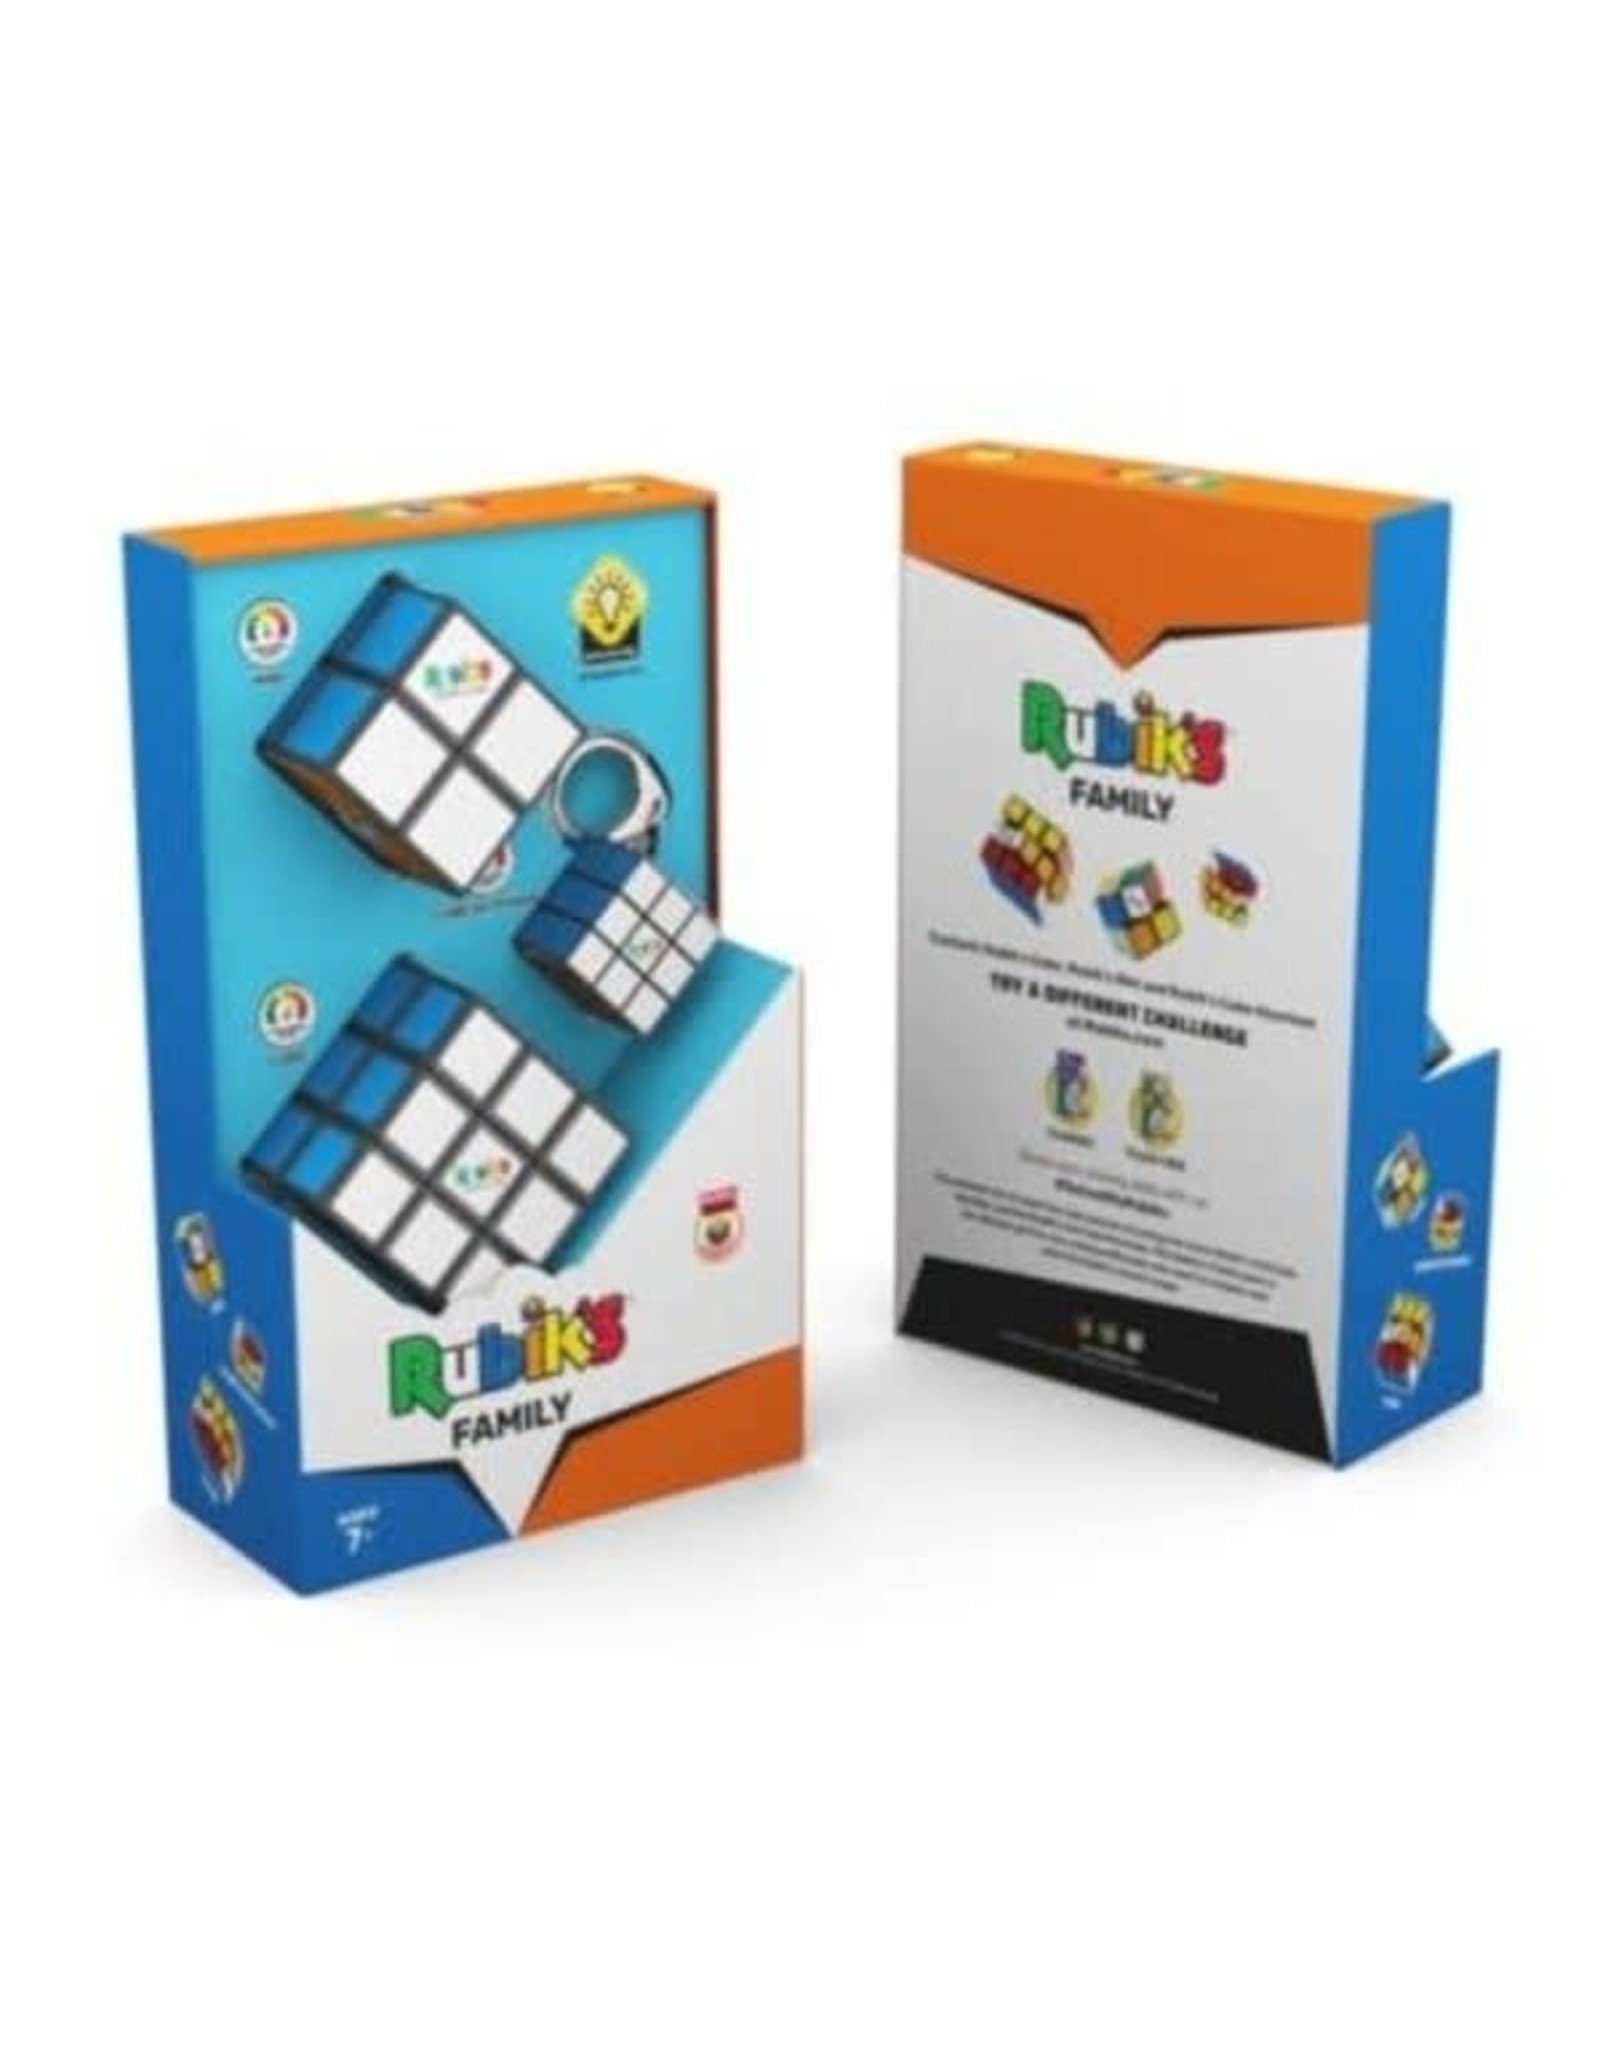 Rubik's RUBIK's 3pc FAMILY PACK